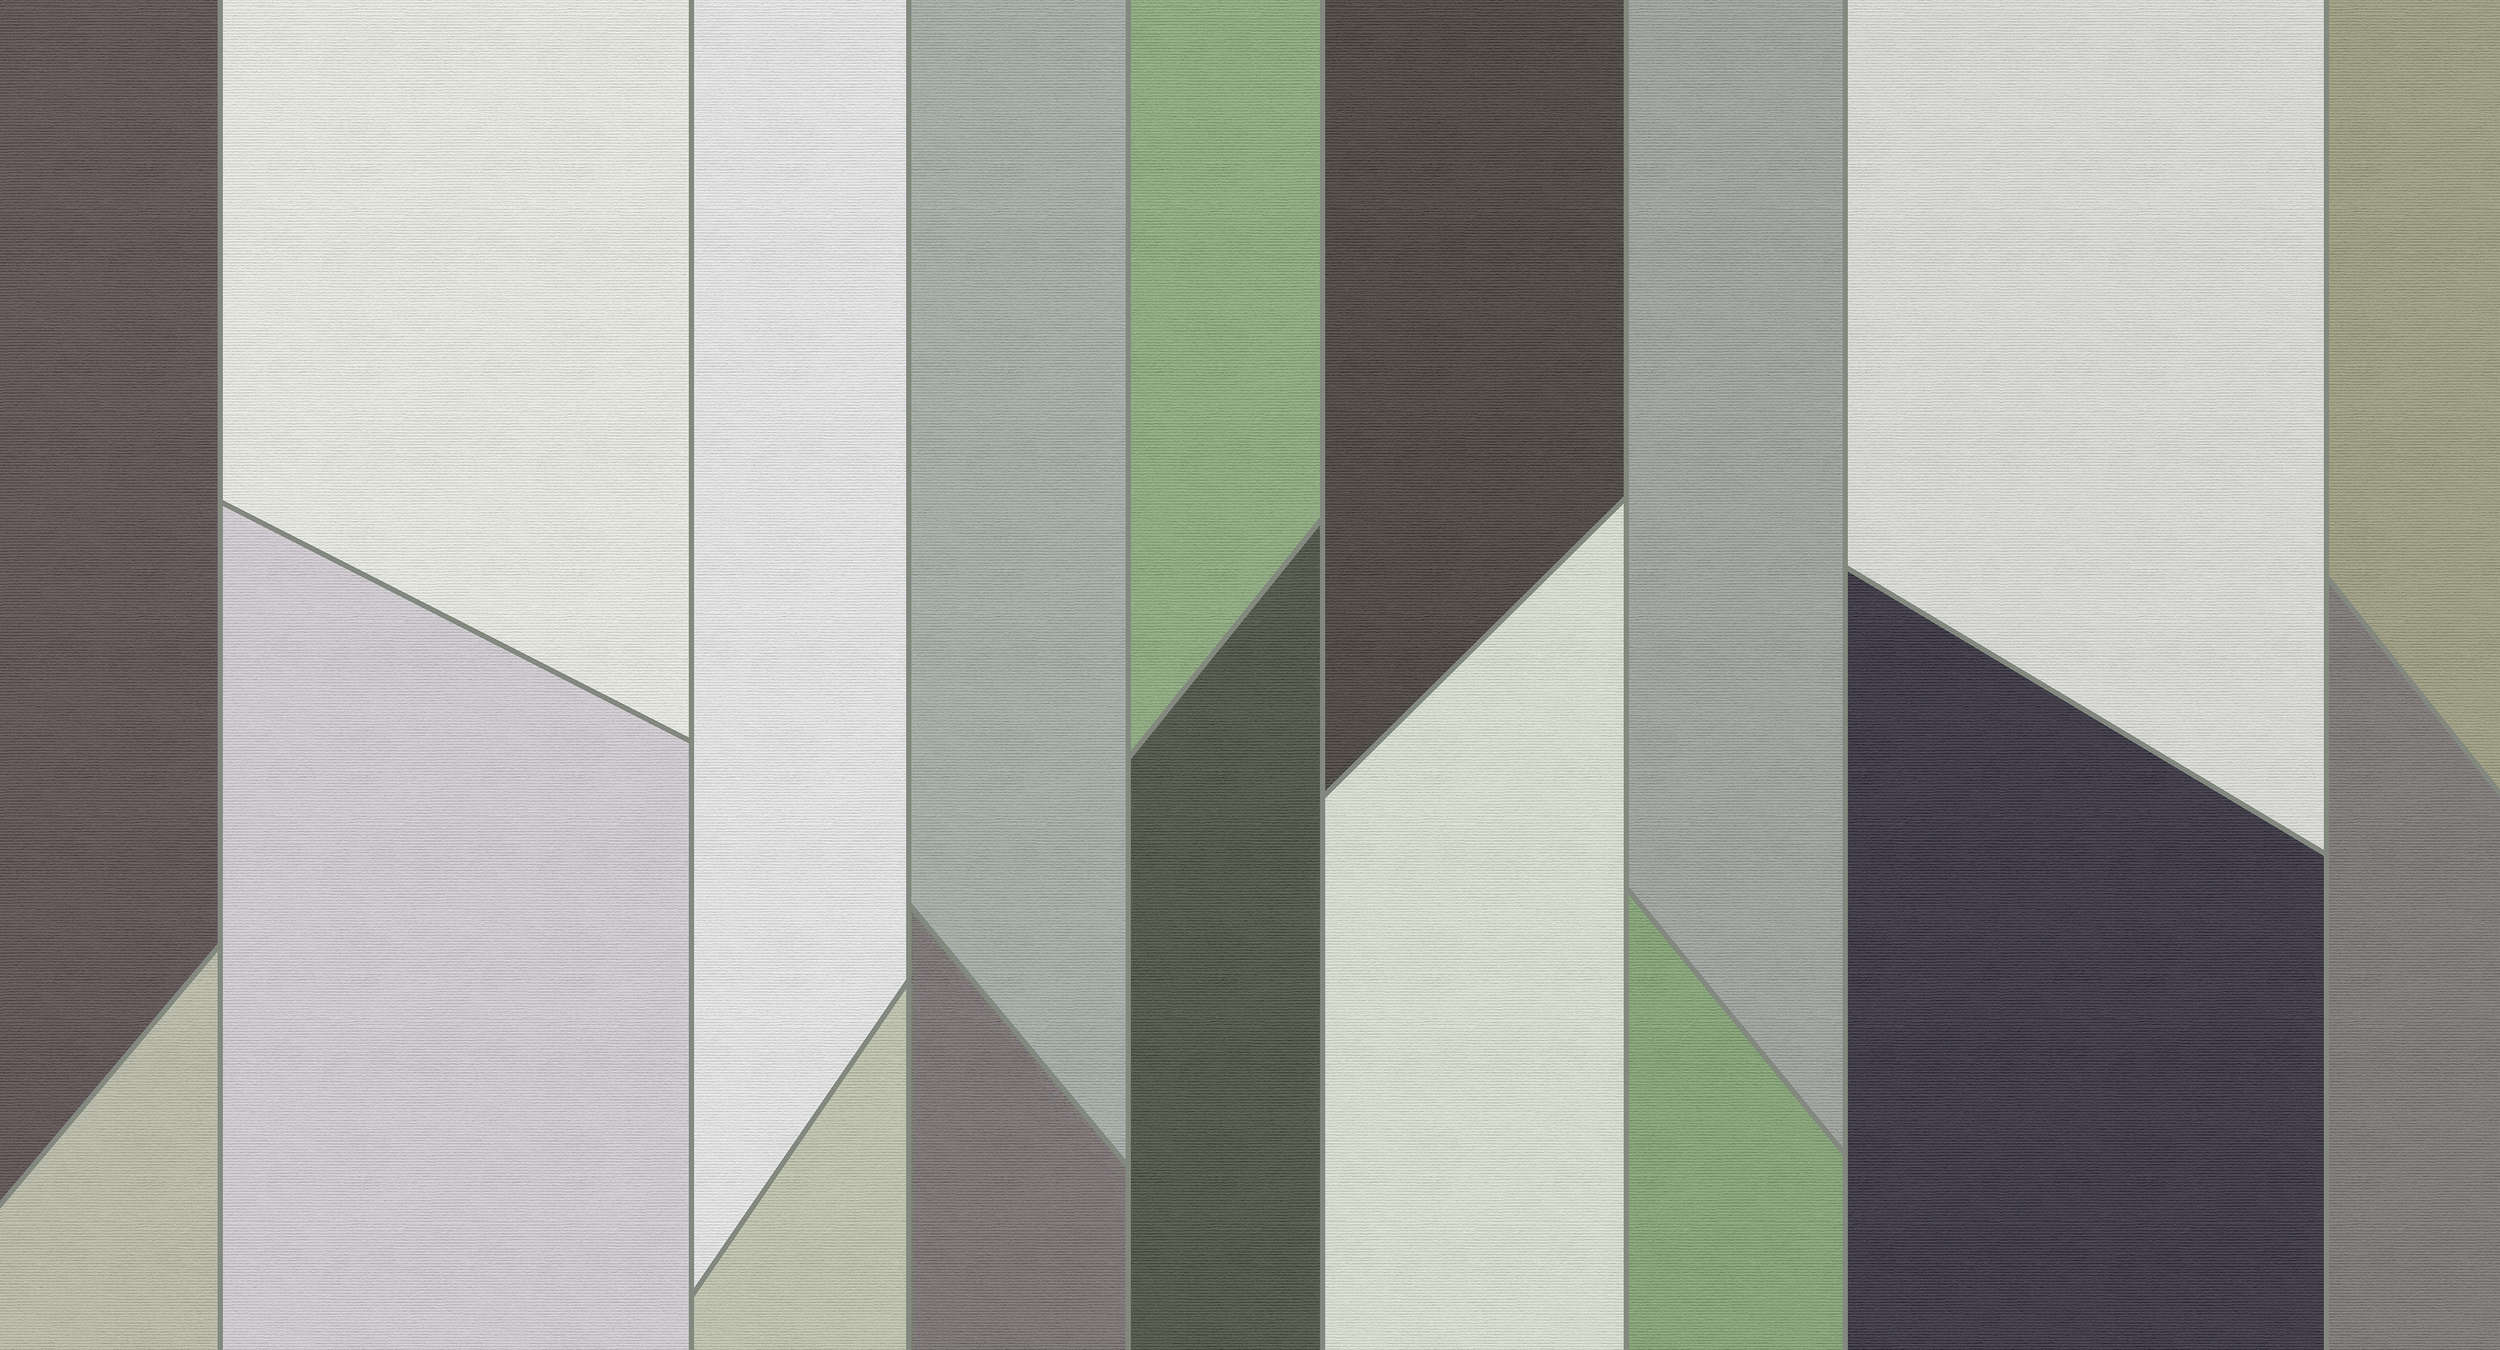             Geometry 3 - Papel pintado a rayas en estructura acanalada con diseño retro colorido - Verde, Violeta | Estructura no tejida
        